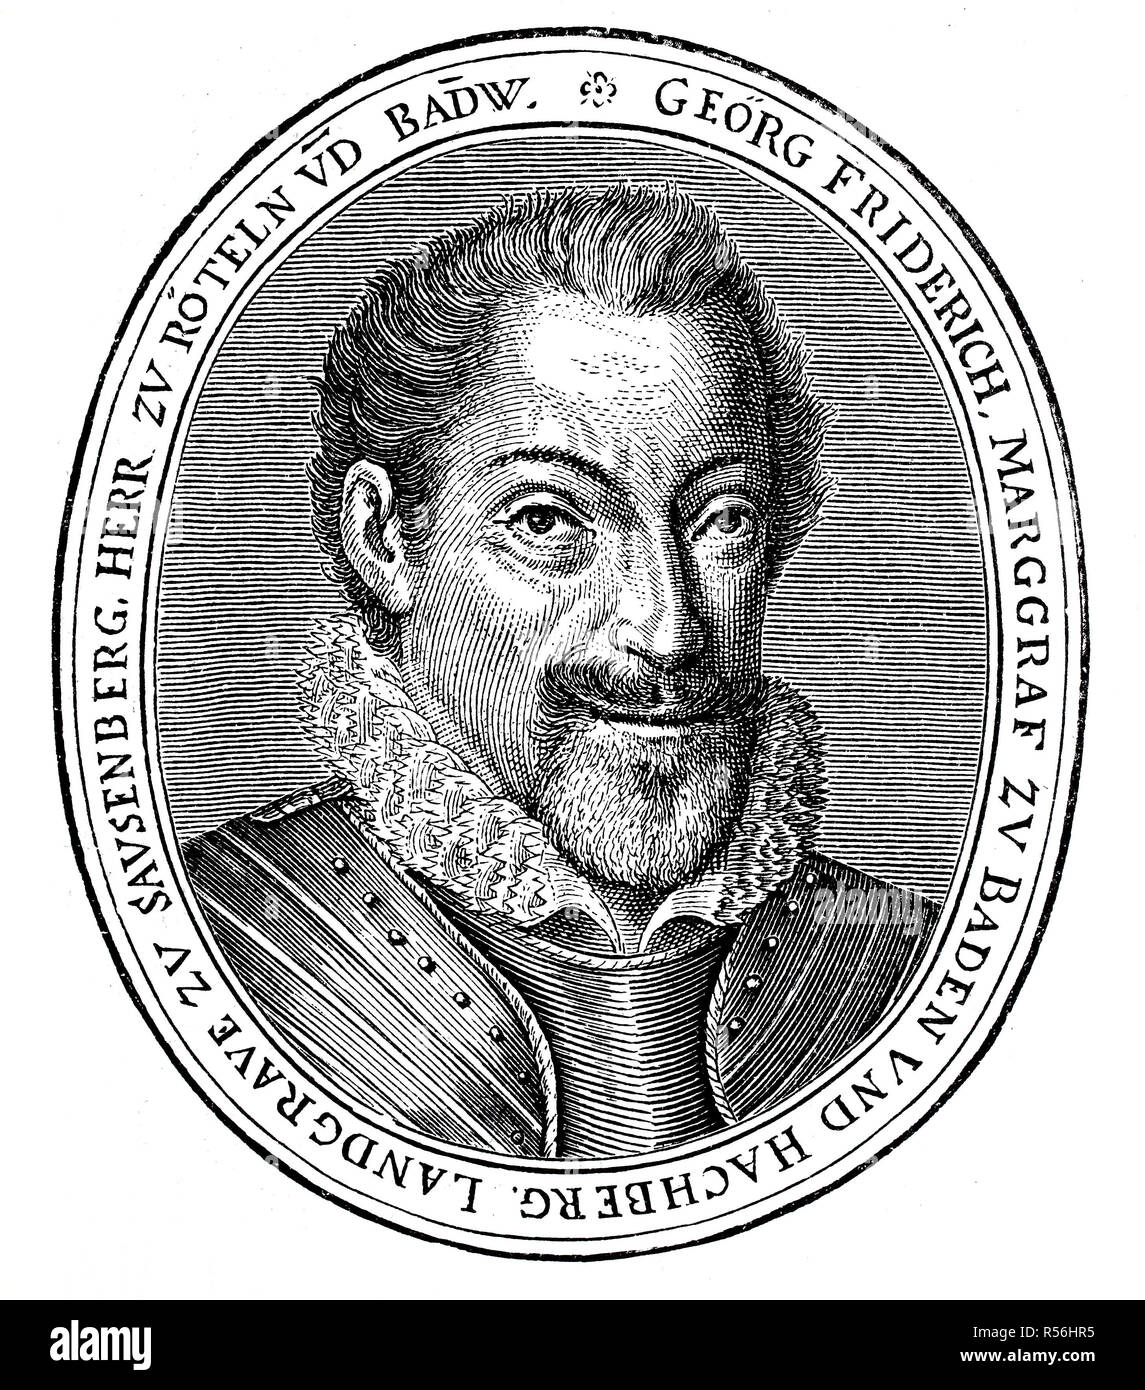 Georg Friedrich, Januar 30, 1573, September 24, 1638, Markgraf von Baden-Durlach, Holzschnitt, Deutschland Stockfoto